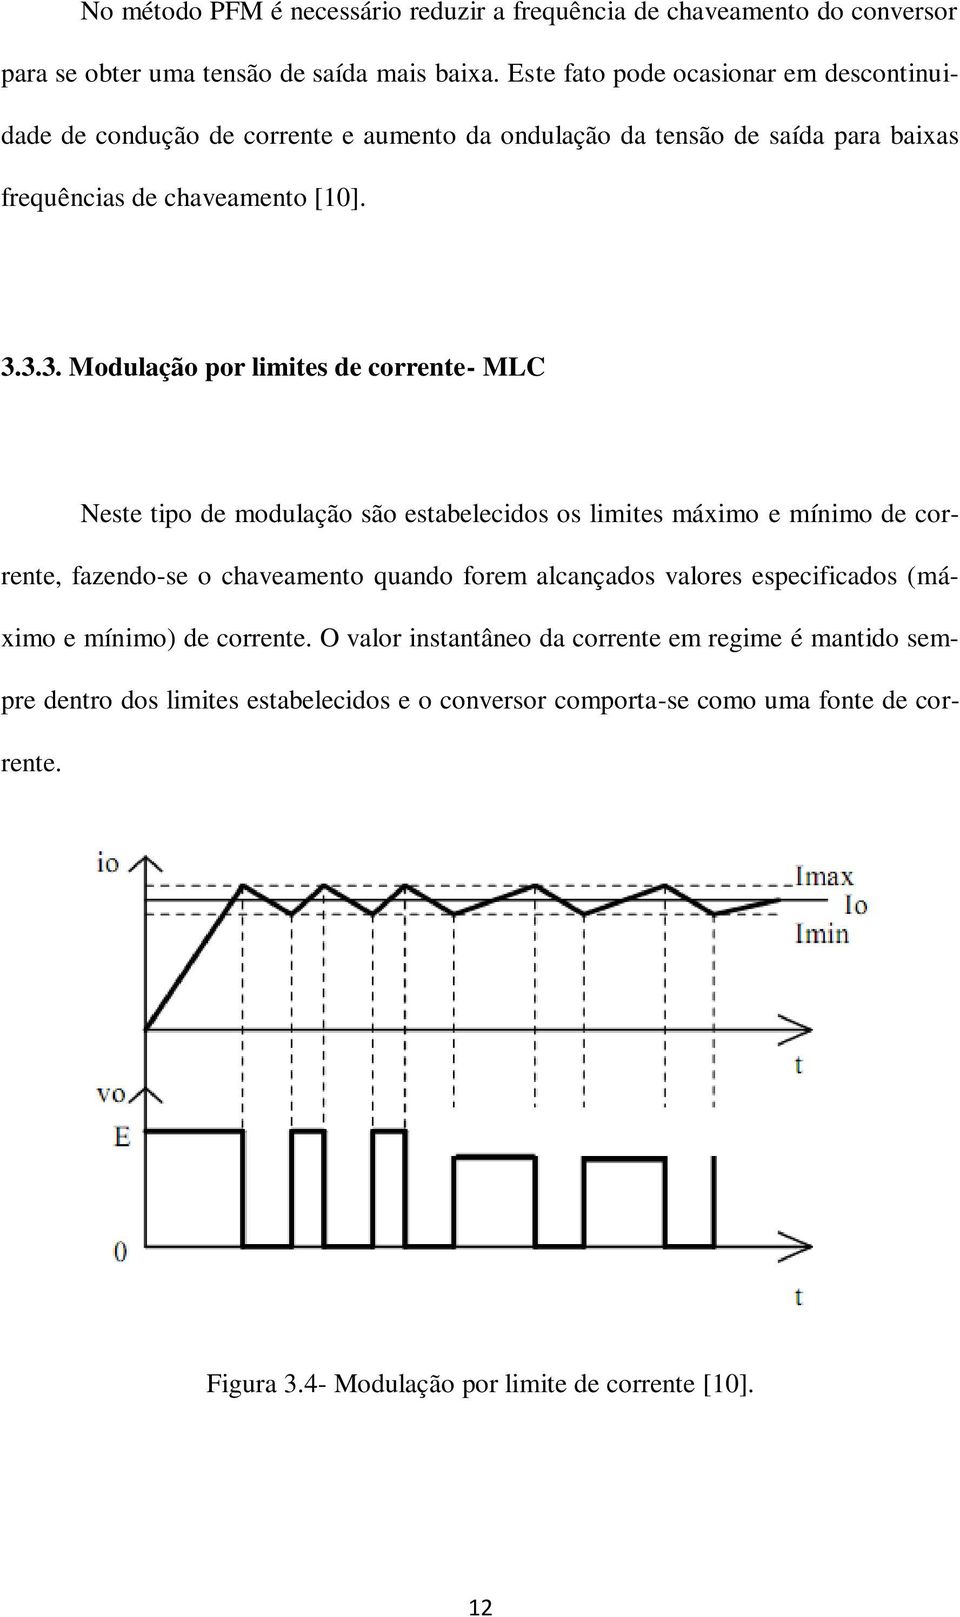 3.3. Modulação por limites de corrente- MLC Neste tipo de modulação são estabelecidos os limites máximo e mínimo de corrente, fazendo-se o chaveamento quando forem alcançados